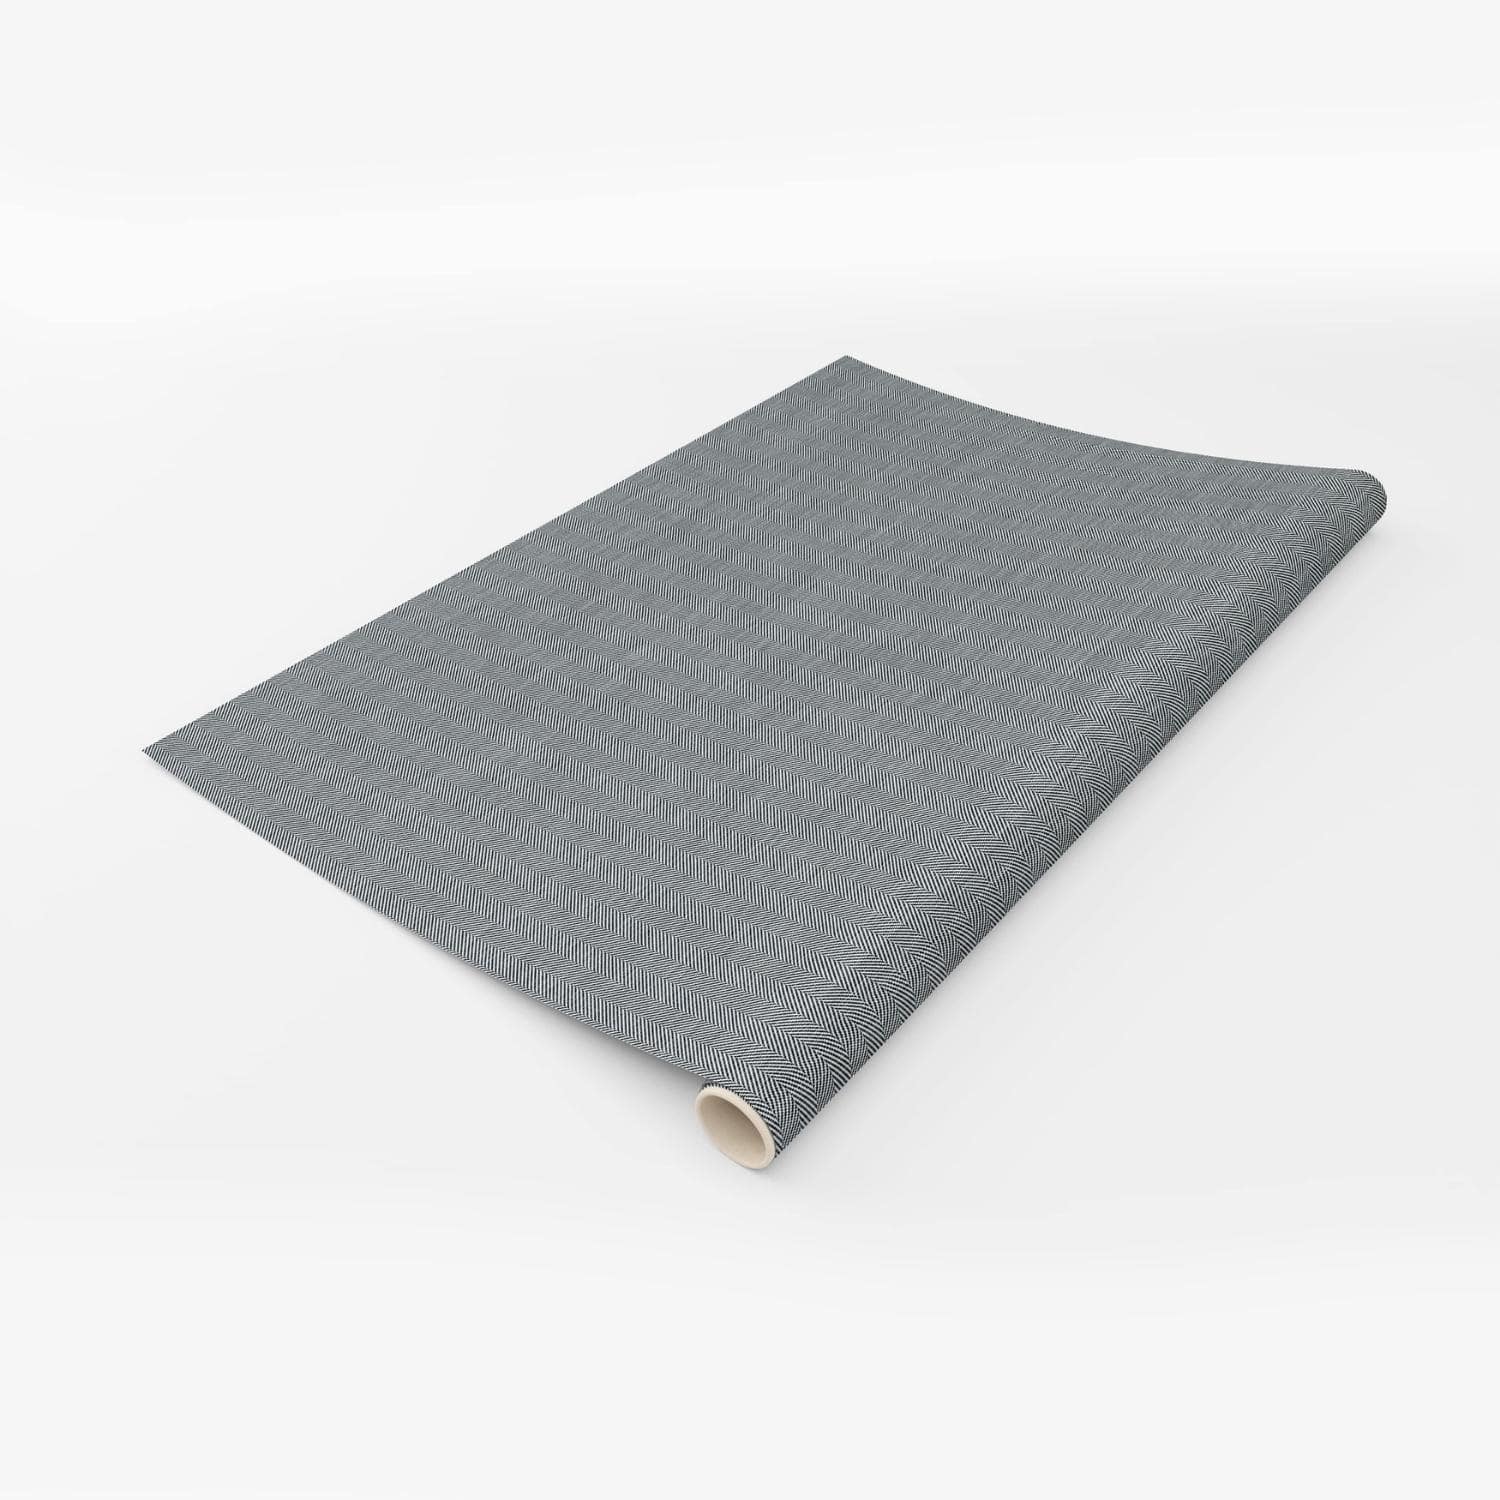 NG10-film-adhesif-decoratif-colle-anti-bulle-aire-textile-tissu-motif-point-de-hongrie-gris-texture-renovation-meuble-mur-4